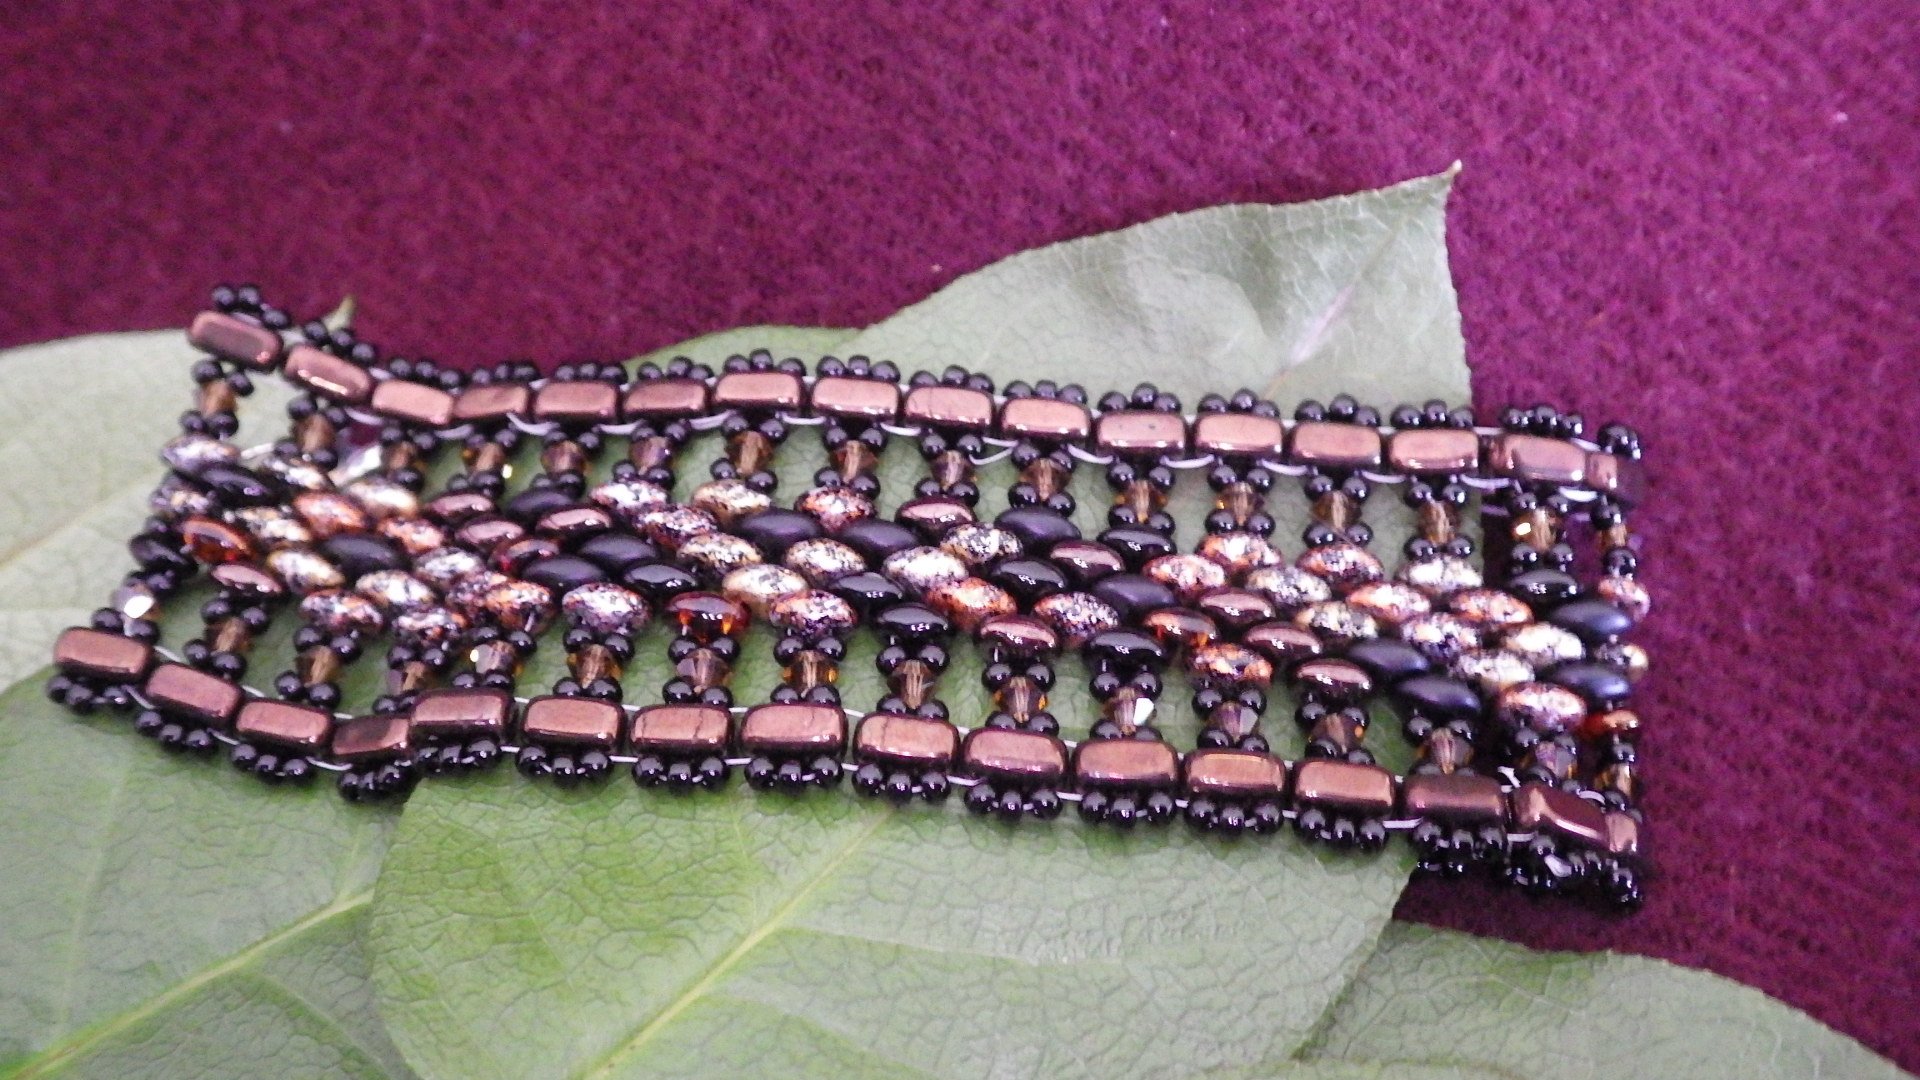  Seed bead bracelet - Brown edge, black fringe, brown pebbled inside with silver findings  9”  $45.00 